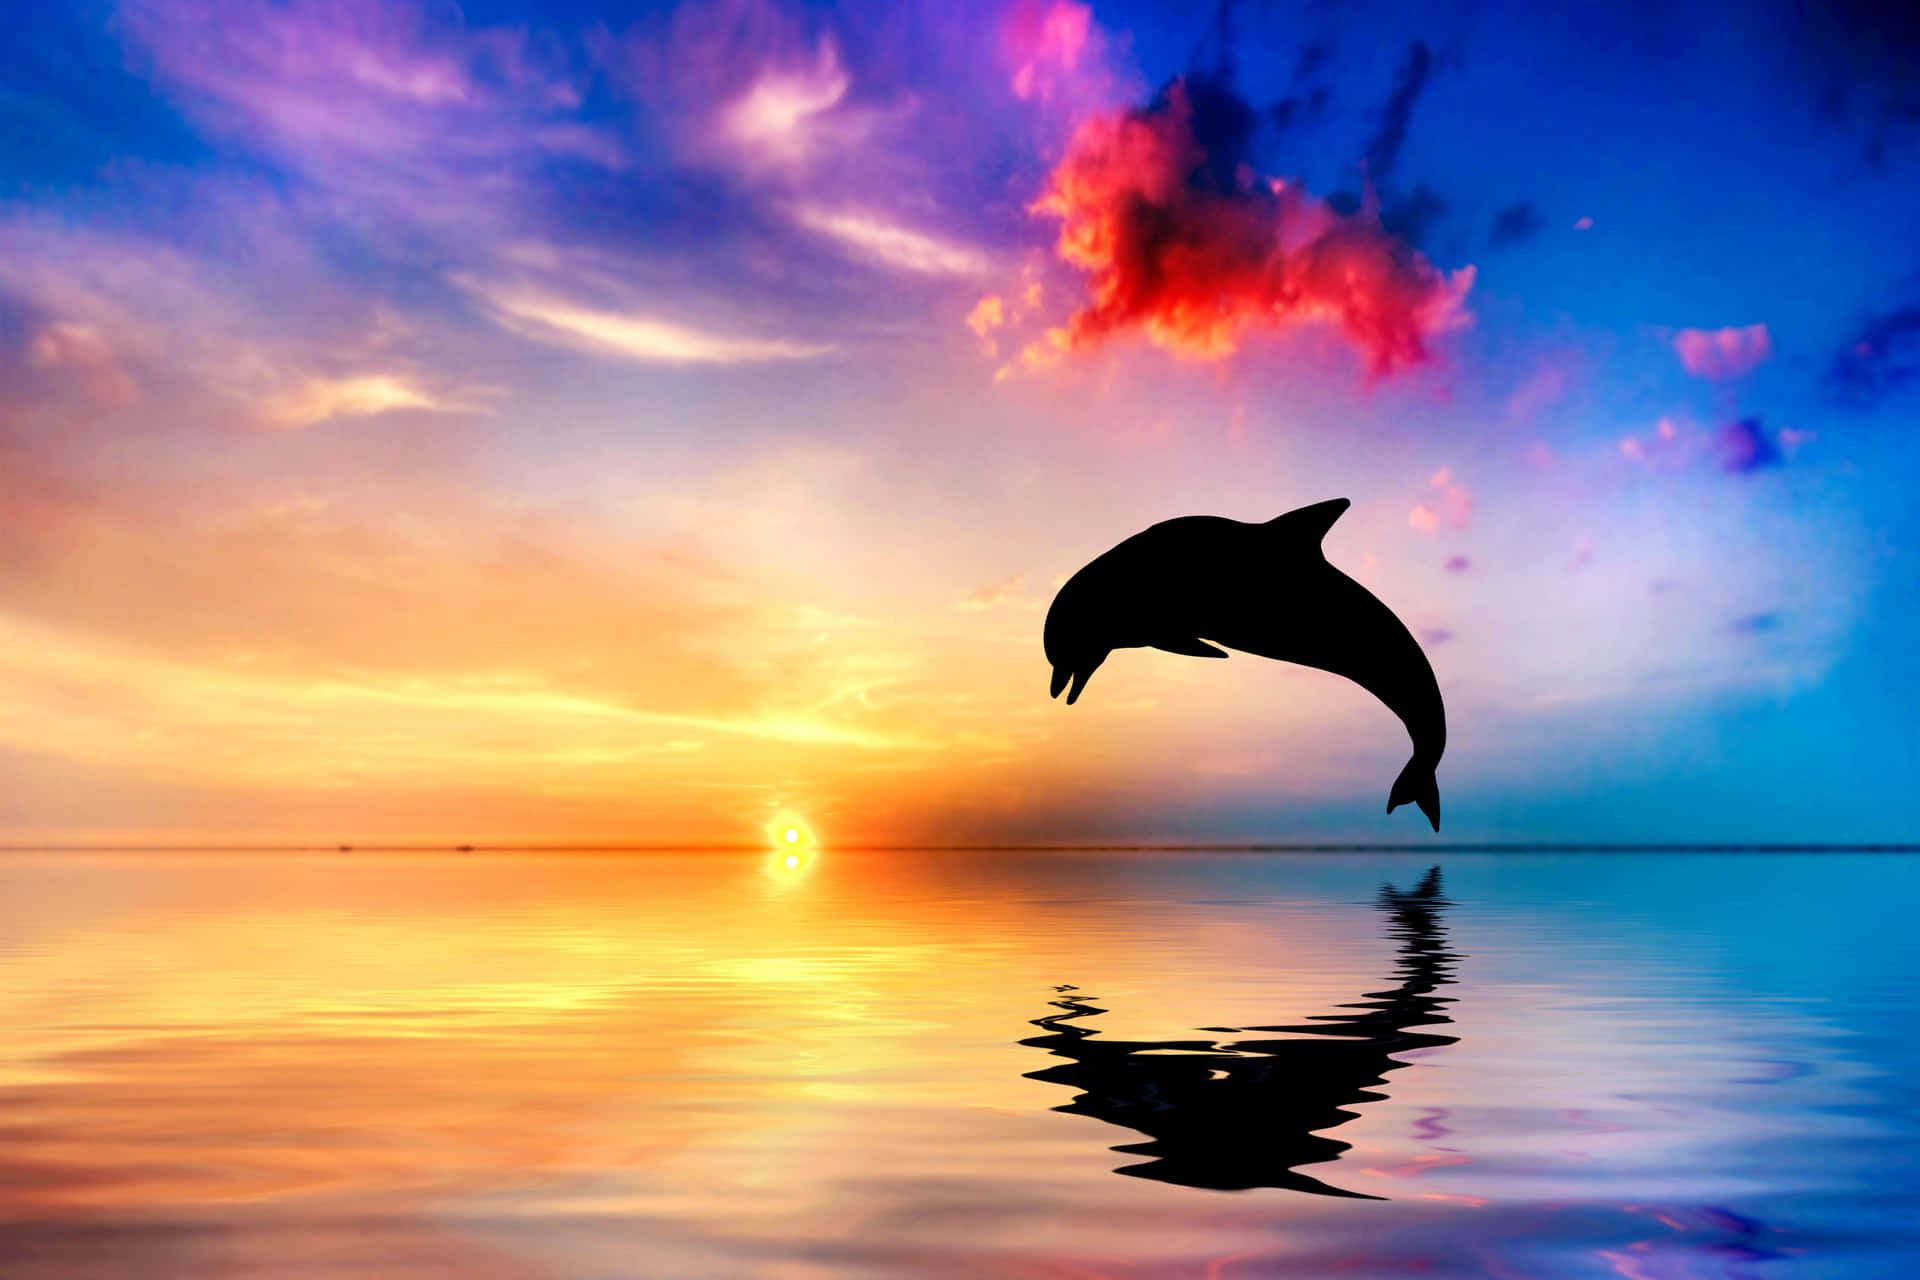 Entspannensie Sich Am Wasser Mit Diesem Coolen Delfin. Wallpaper